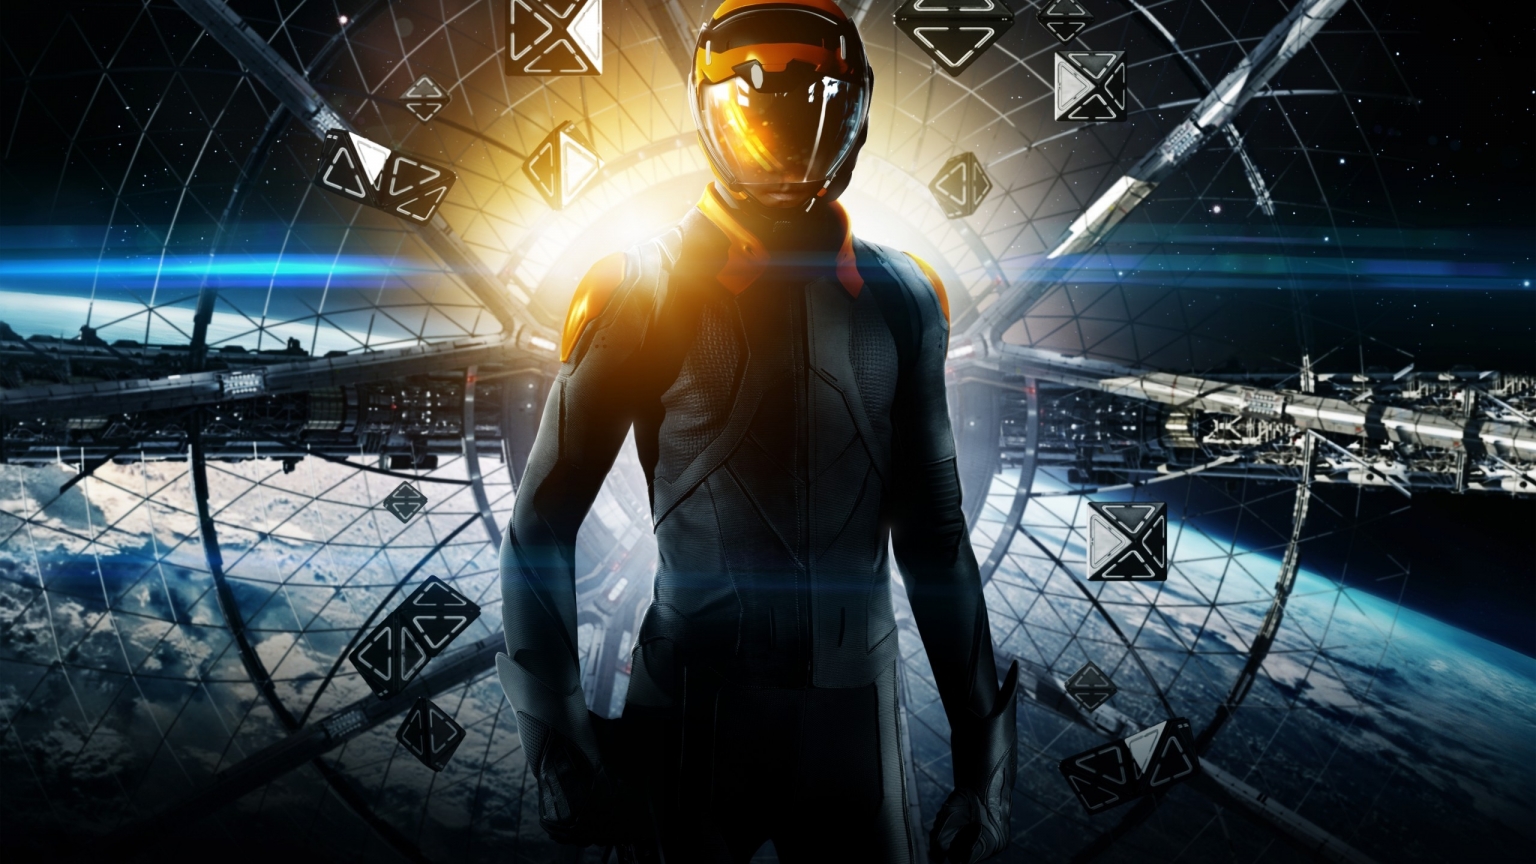 Ender's Game Poster for 1536 x 864 HDTV resolution